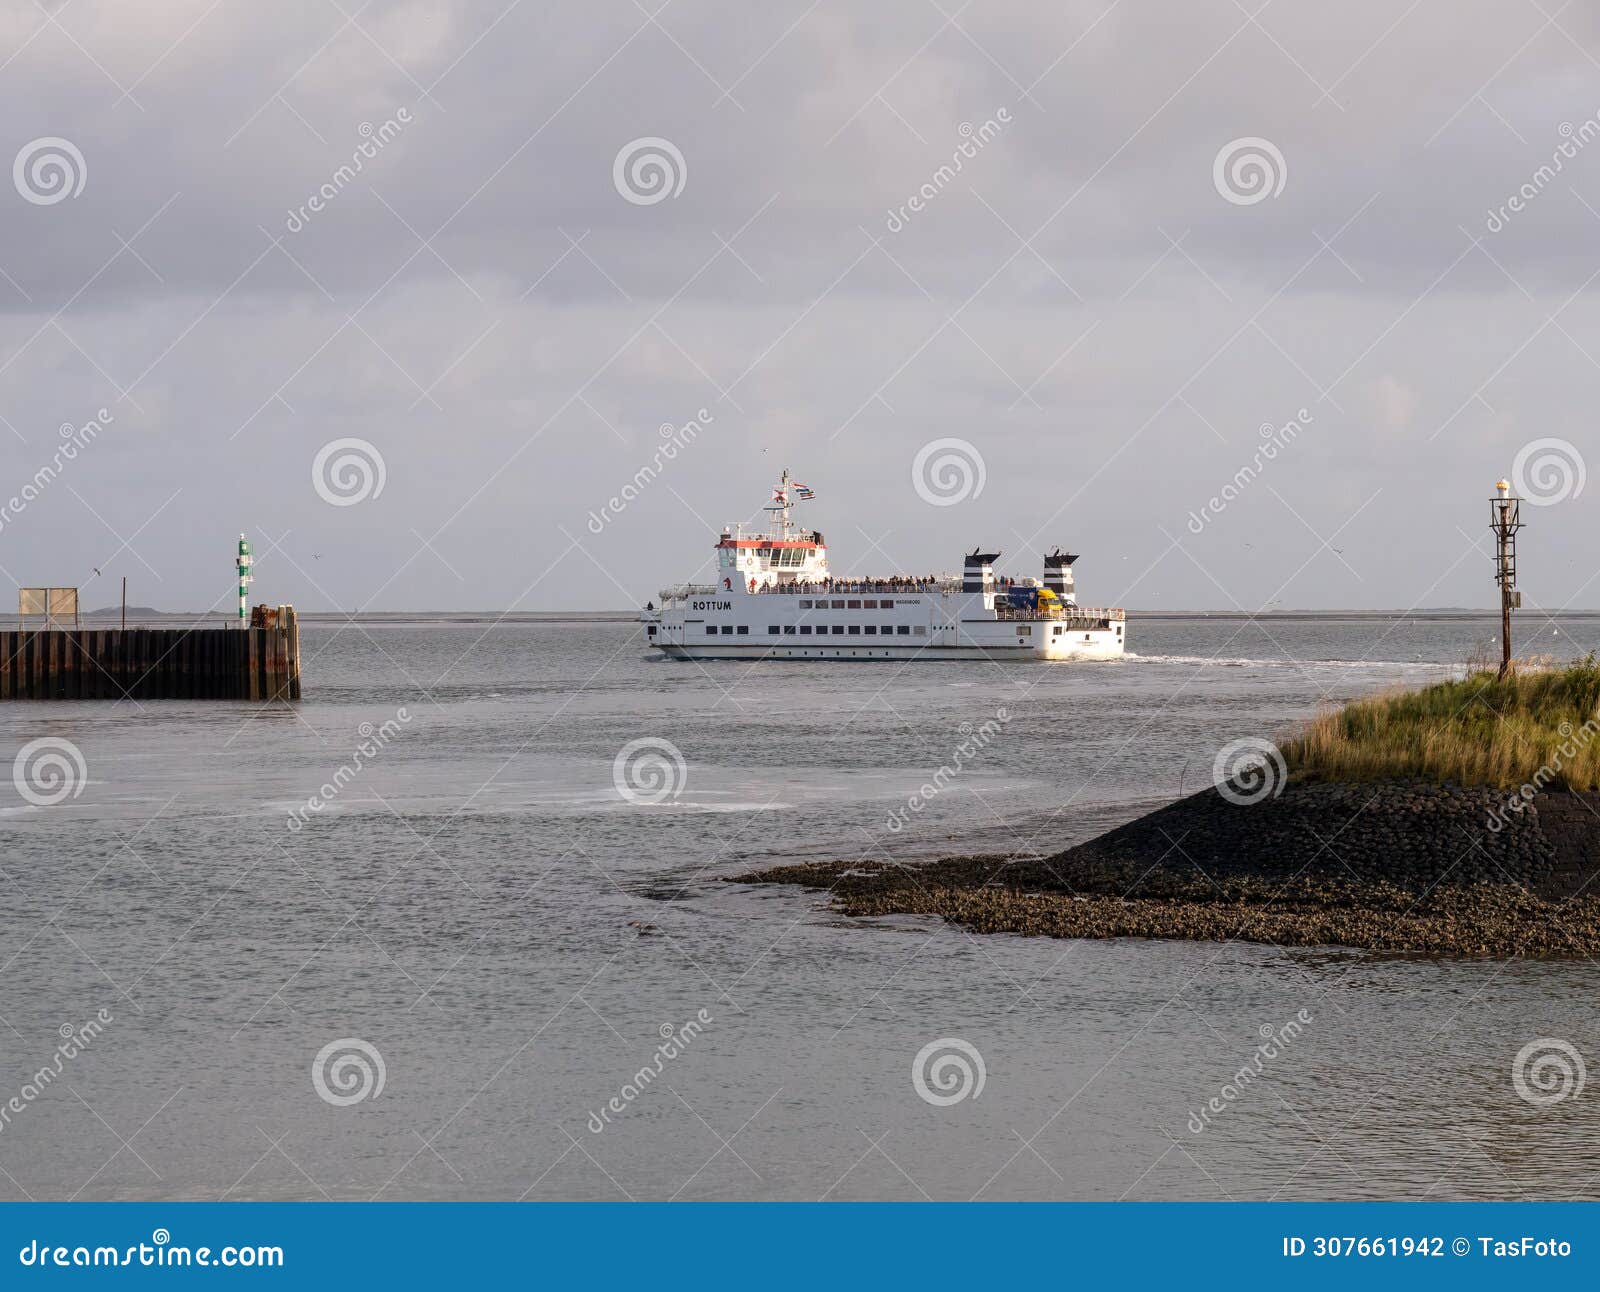 ferry rottum departs lauwersoog, crossing waddensea to schiermonnikoog, netherlands